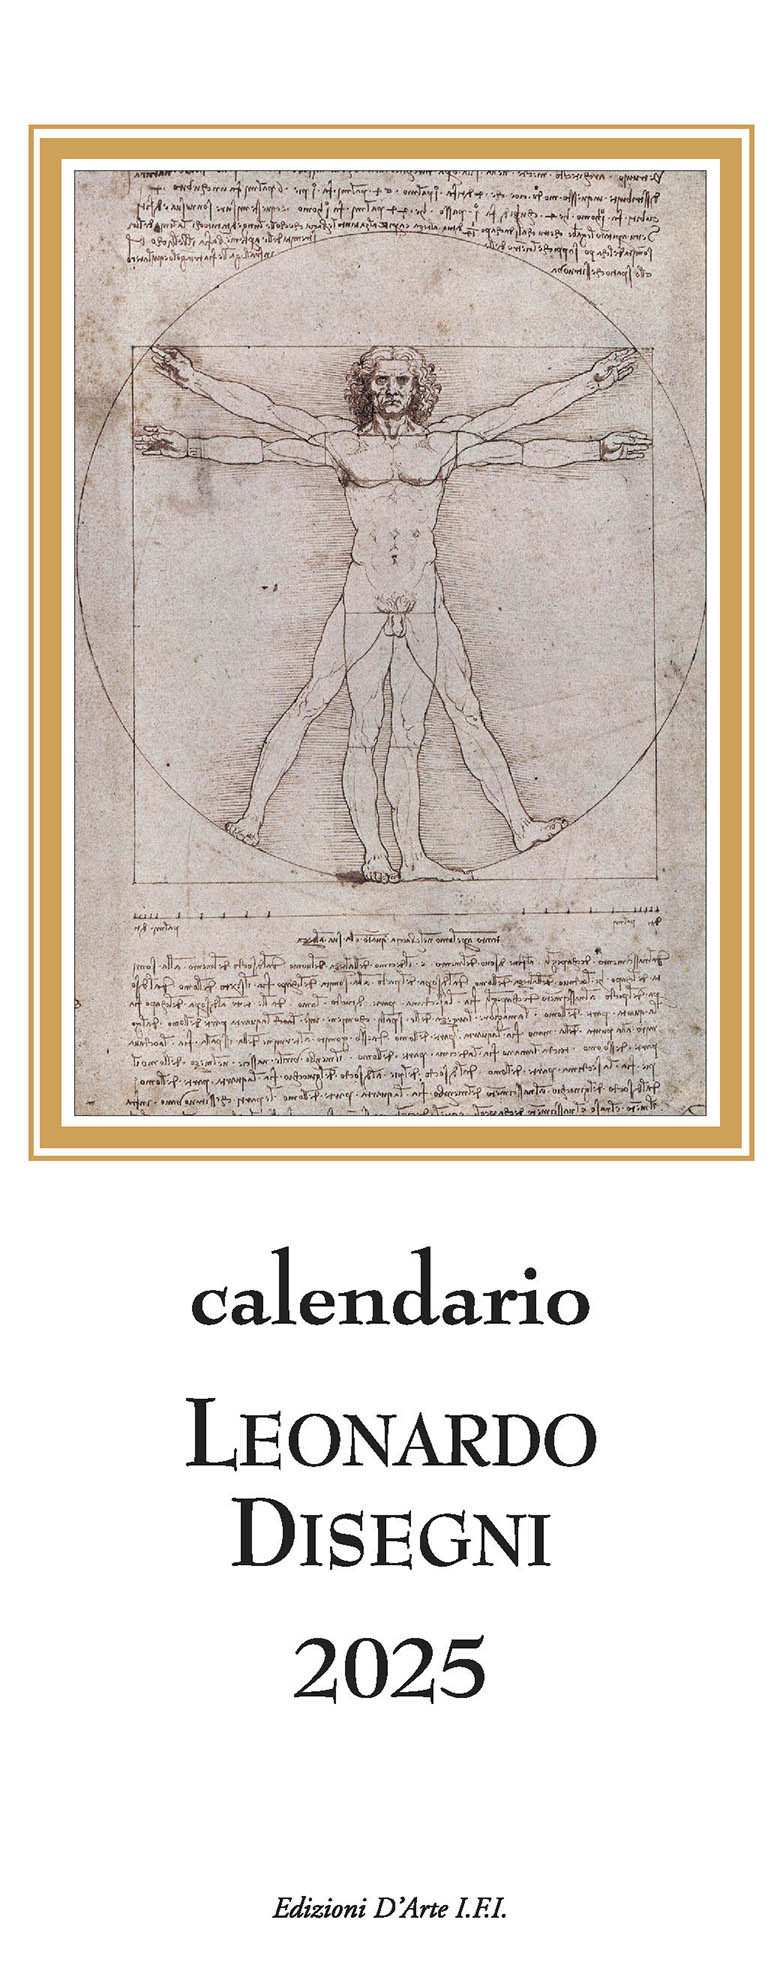 Zeichnungen von Leonardo 2025 